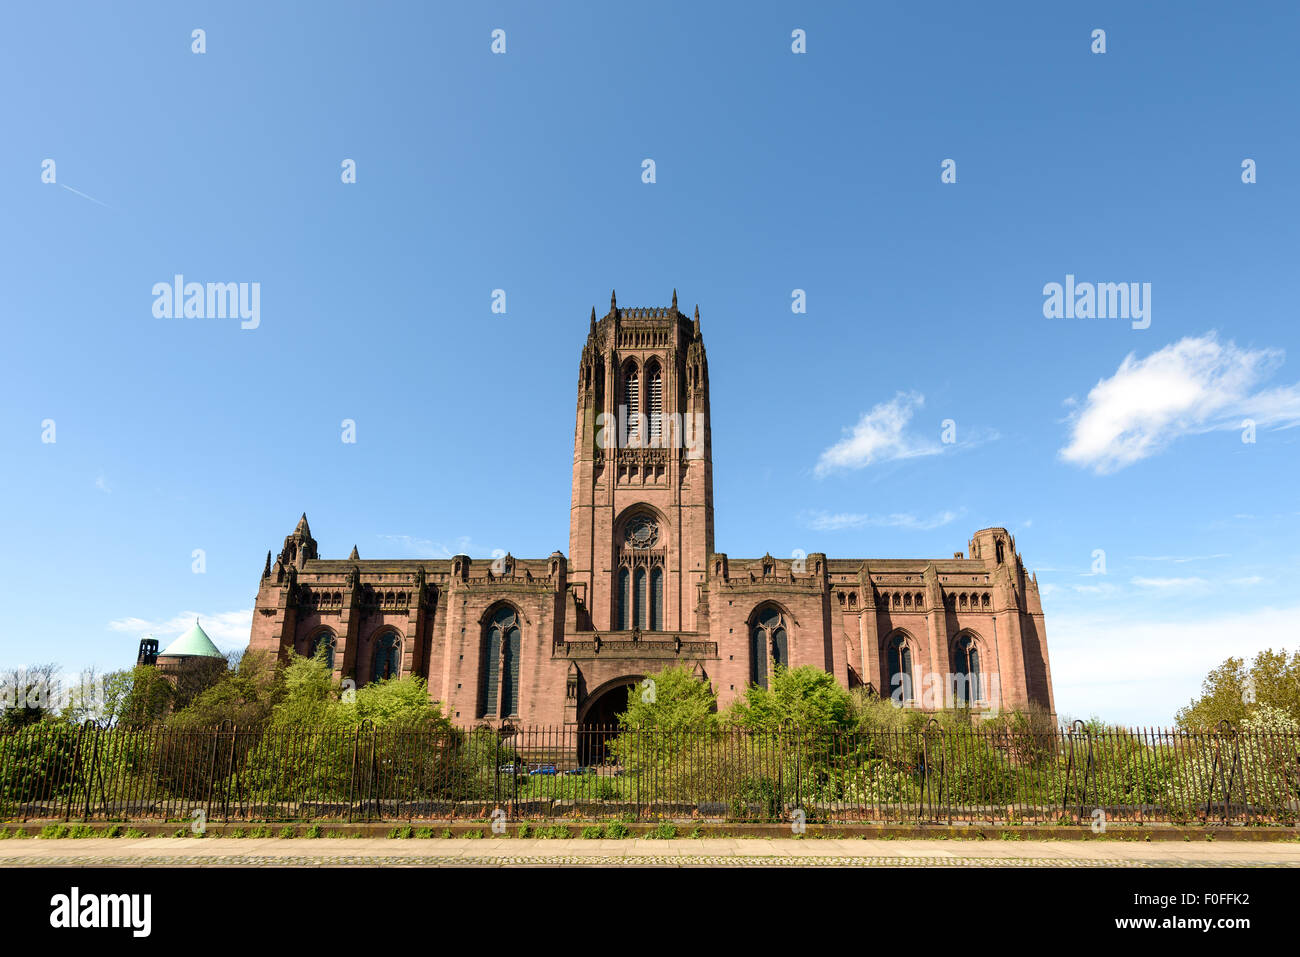 La cathédrale anglicane de Liverpool est la plus grande église au Royaume-Uni. C'est l'un des jalons importants de Liverpool. Banque D'Images